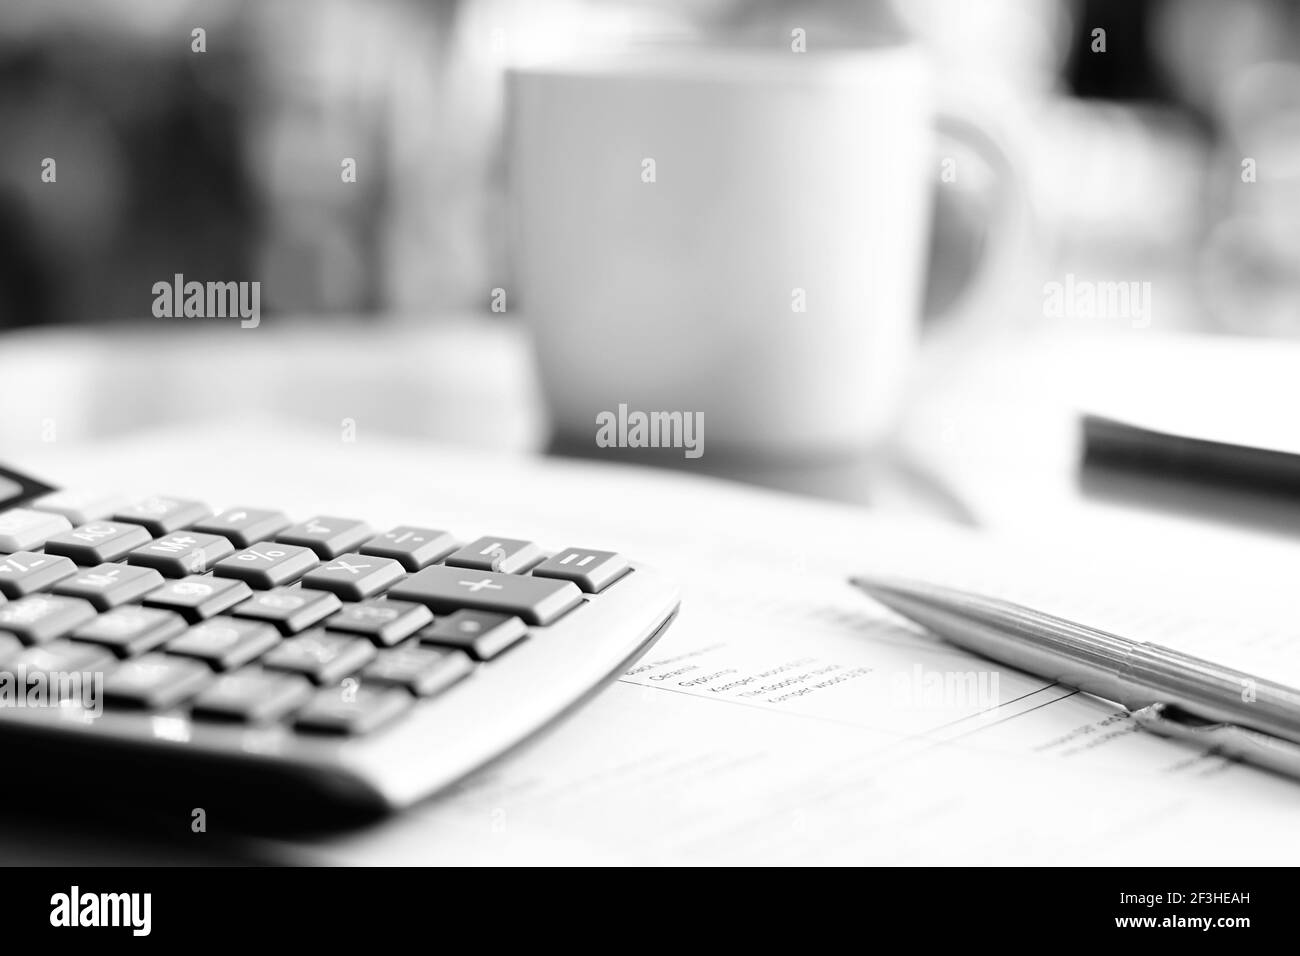 calculatrice et stylo sur papier sur la table avec flou fond de tasse à café - effet monochrome Banque D'Images